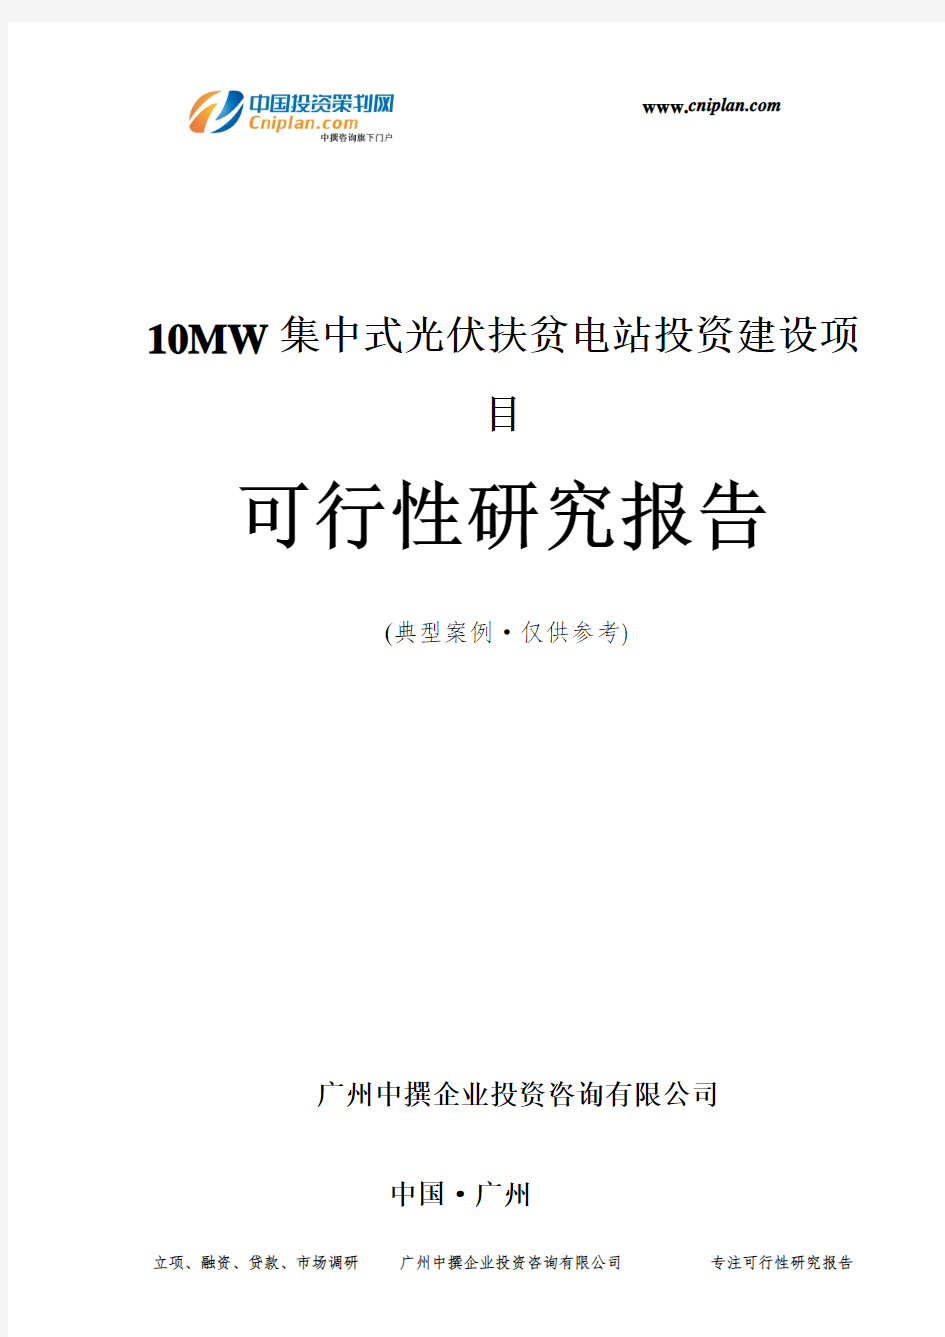 10MW集中式光伏扶贫电站投资建设项目可行性研究报告-广州中撰咨询